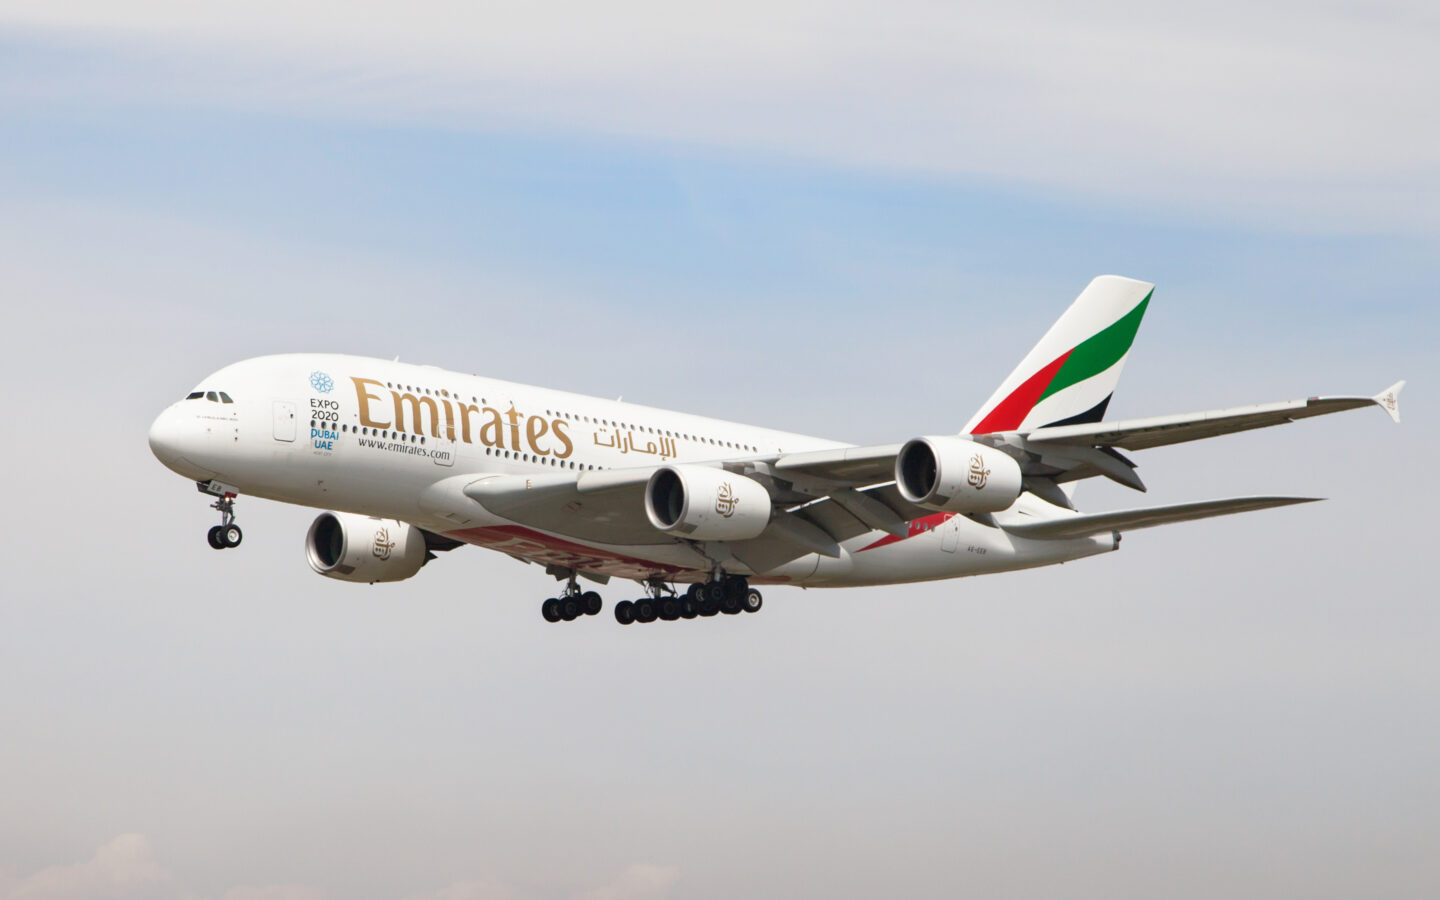 Emirates first class flights